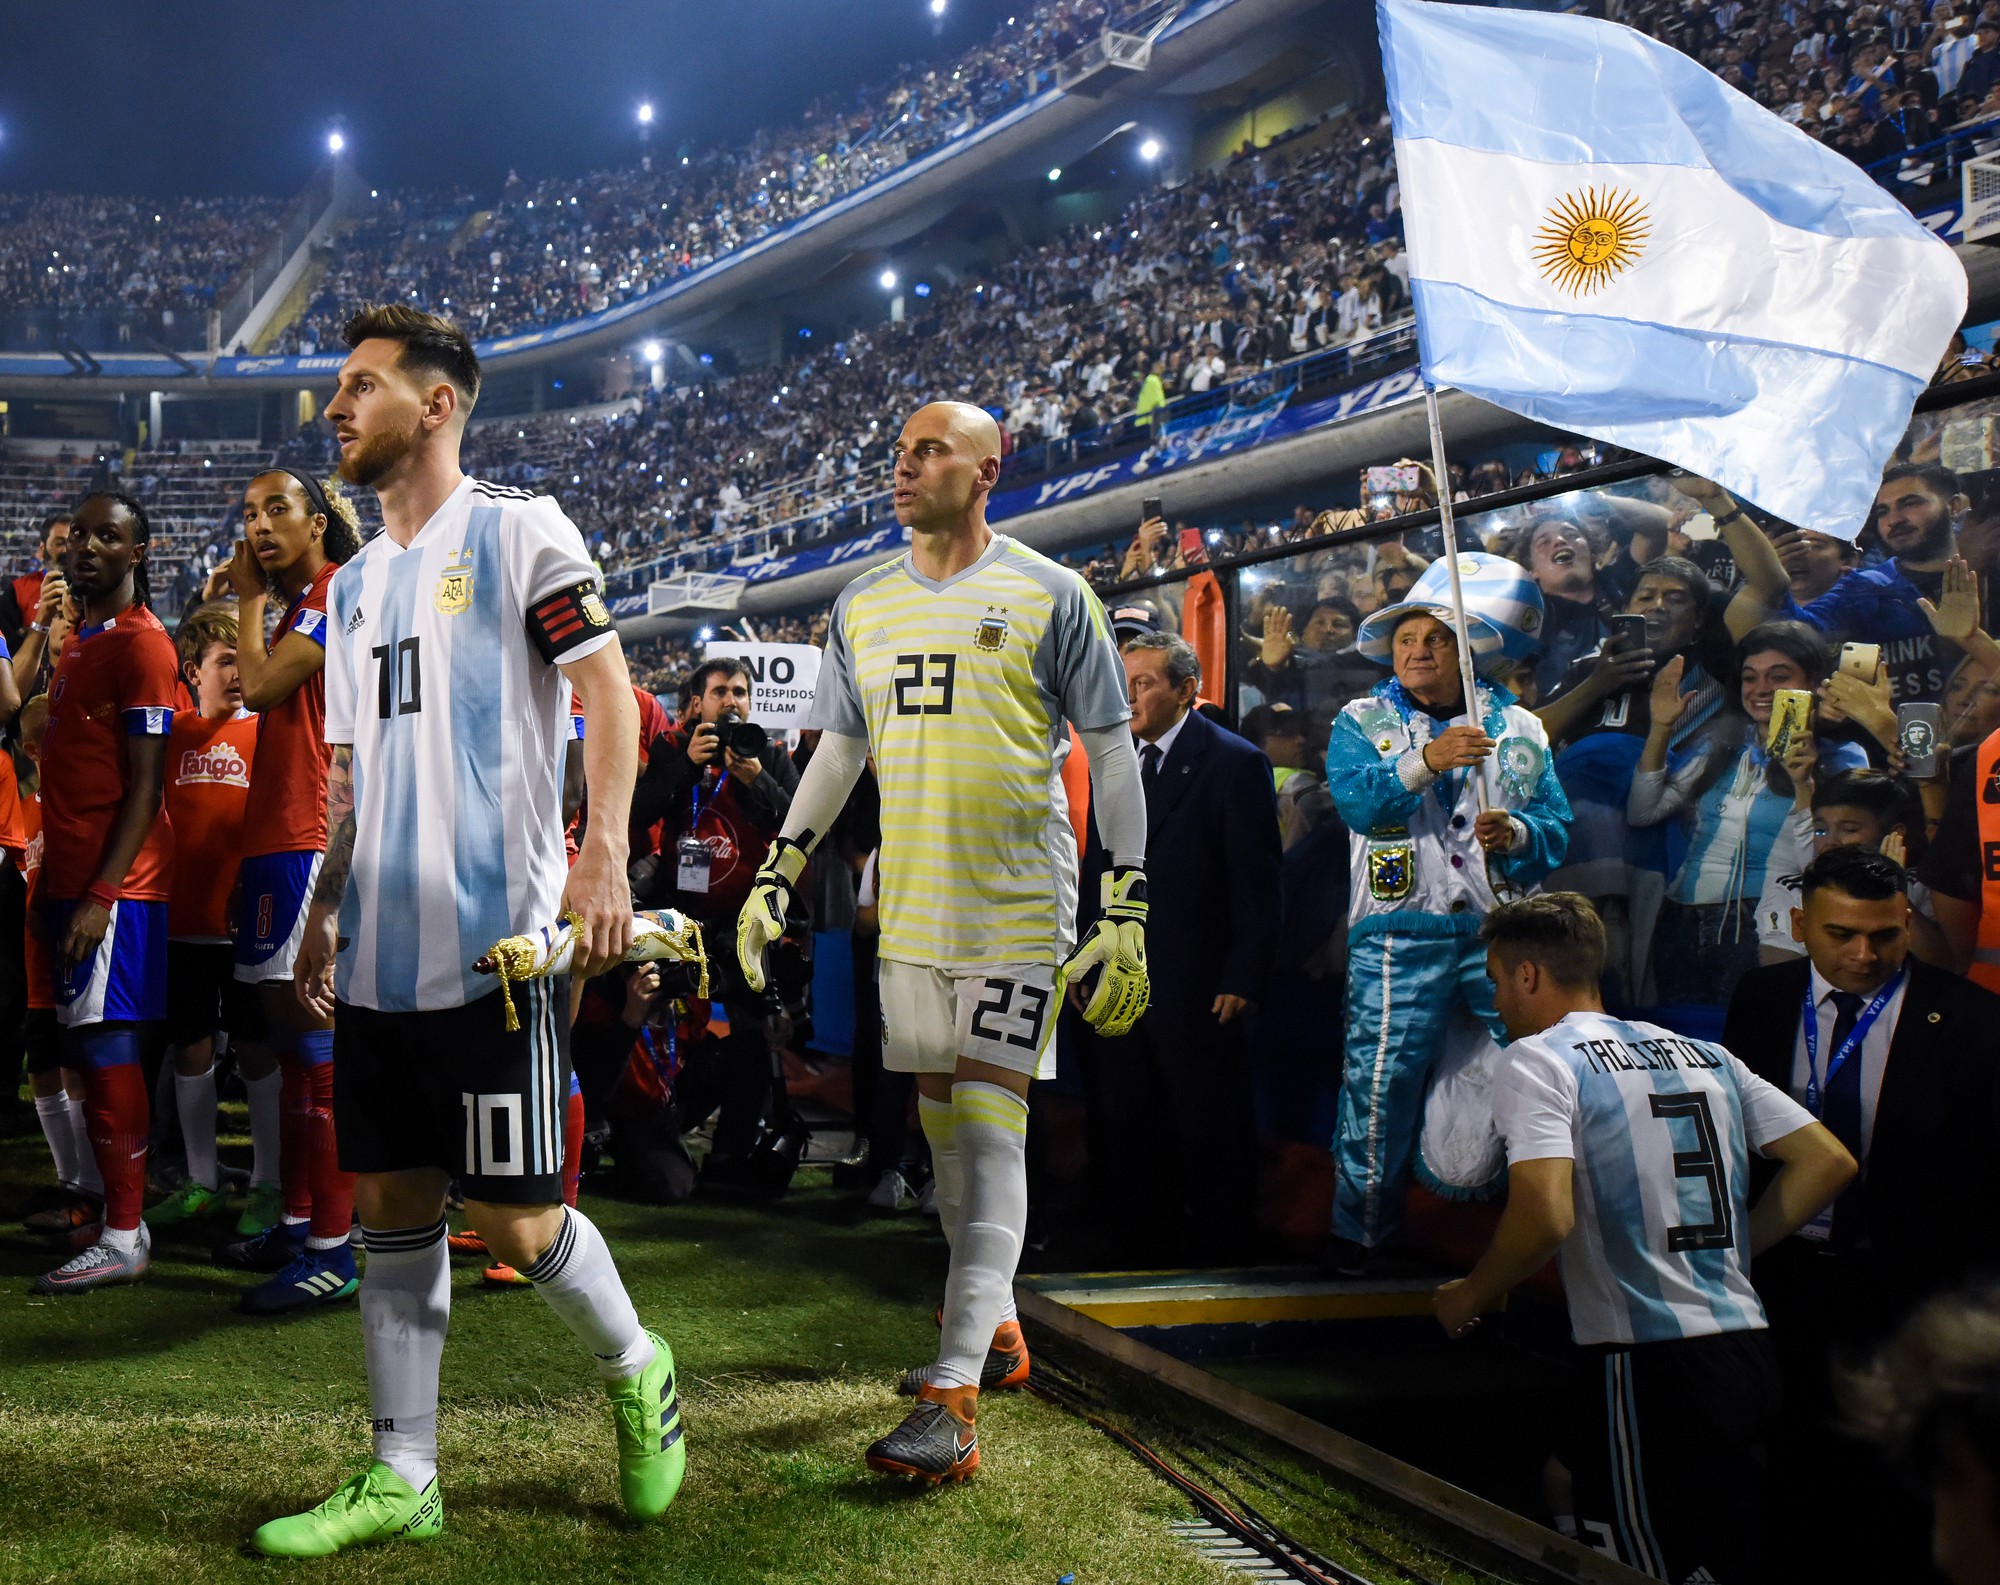 Lo ngại bạo loạn, trận giao hữu trước World Cup giữa Argentina và Israel bị hủy - Ảnh 1.